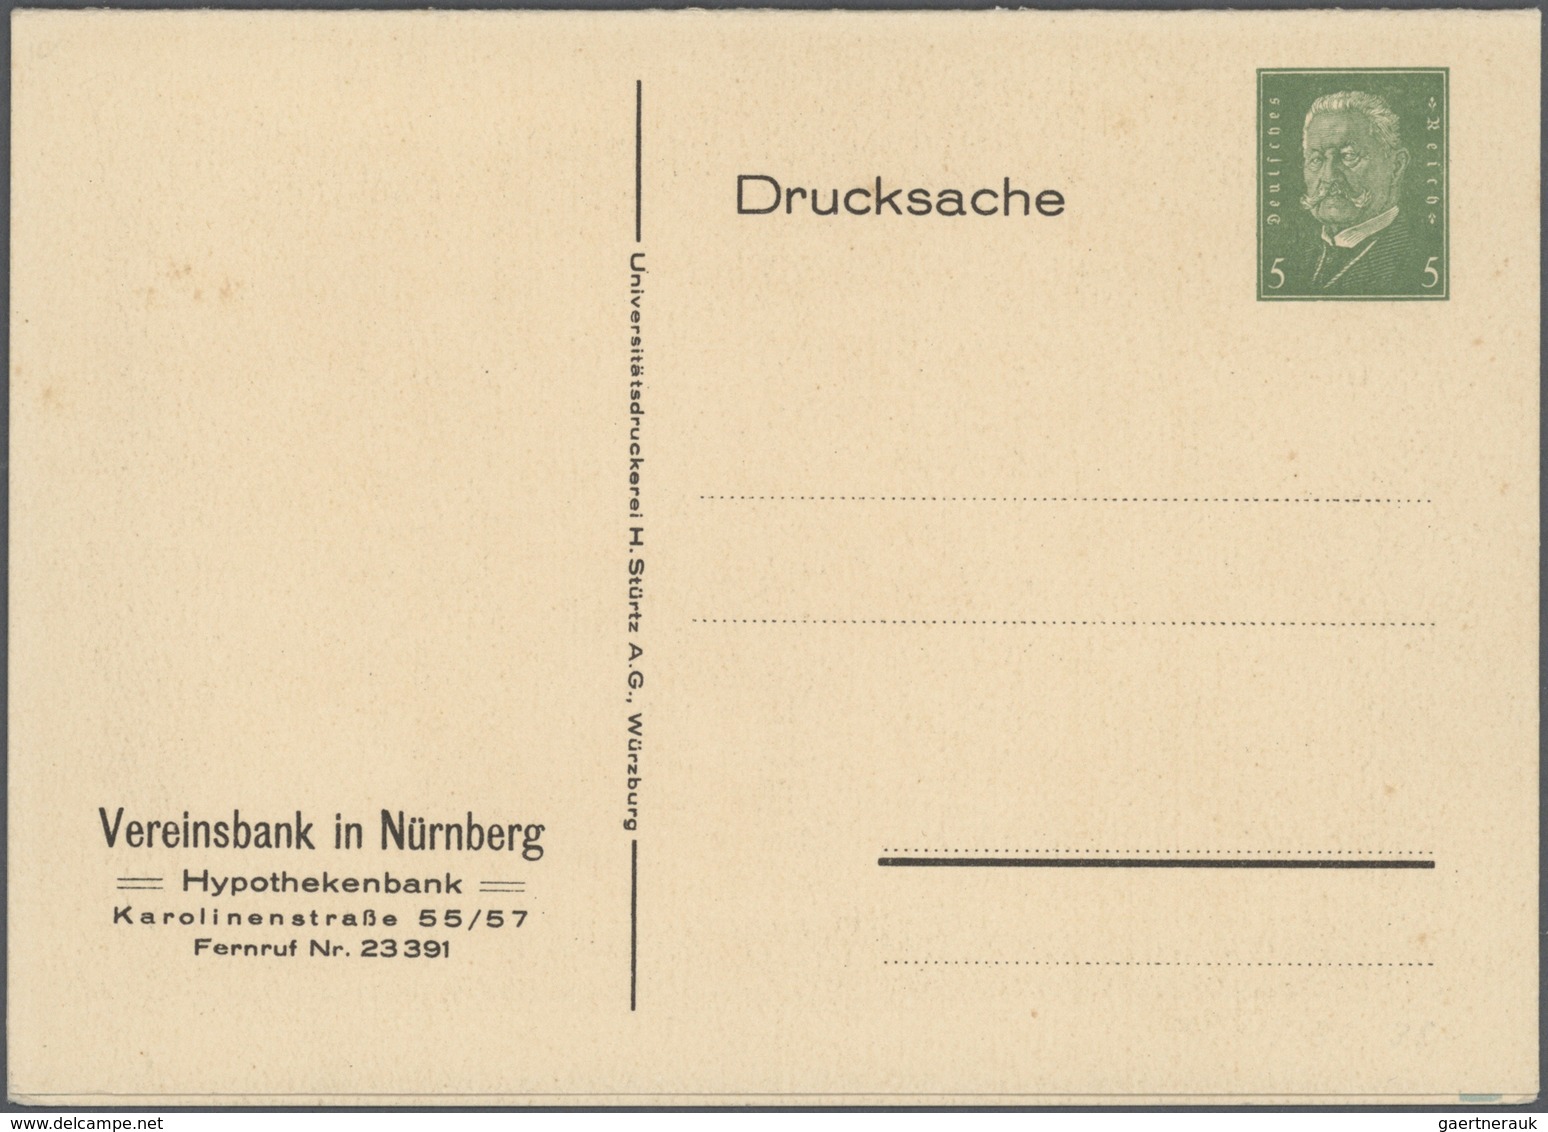 31775 Deutsches Reich - Ganzsachen: 1919/1932, interessante, kleine Ausstellungs-Sammlung "Amtliche Ganzsa